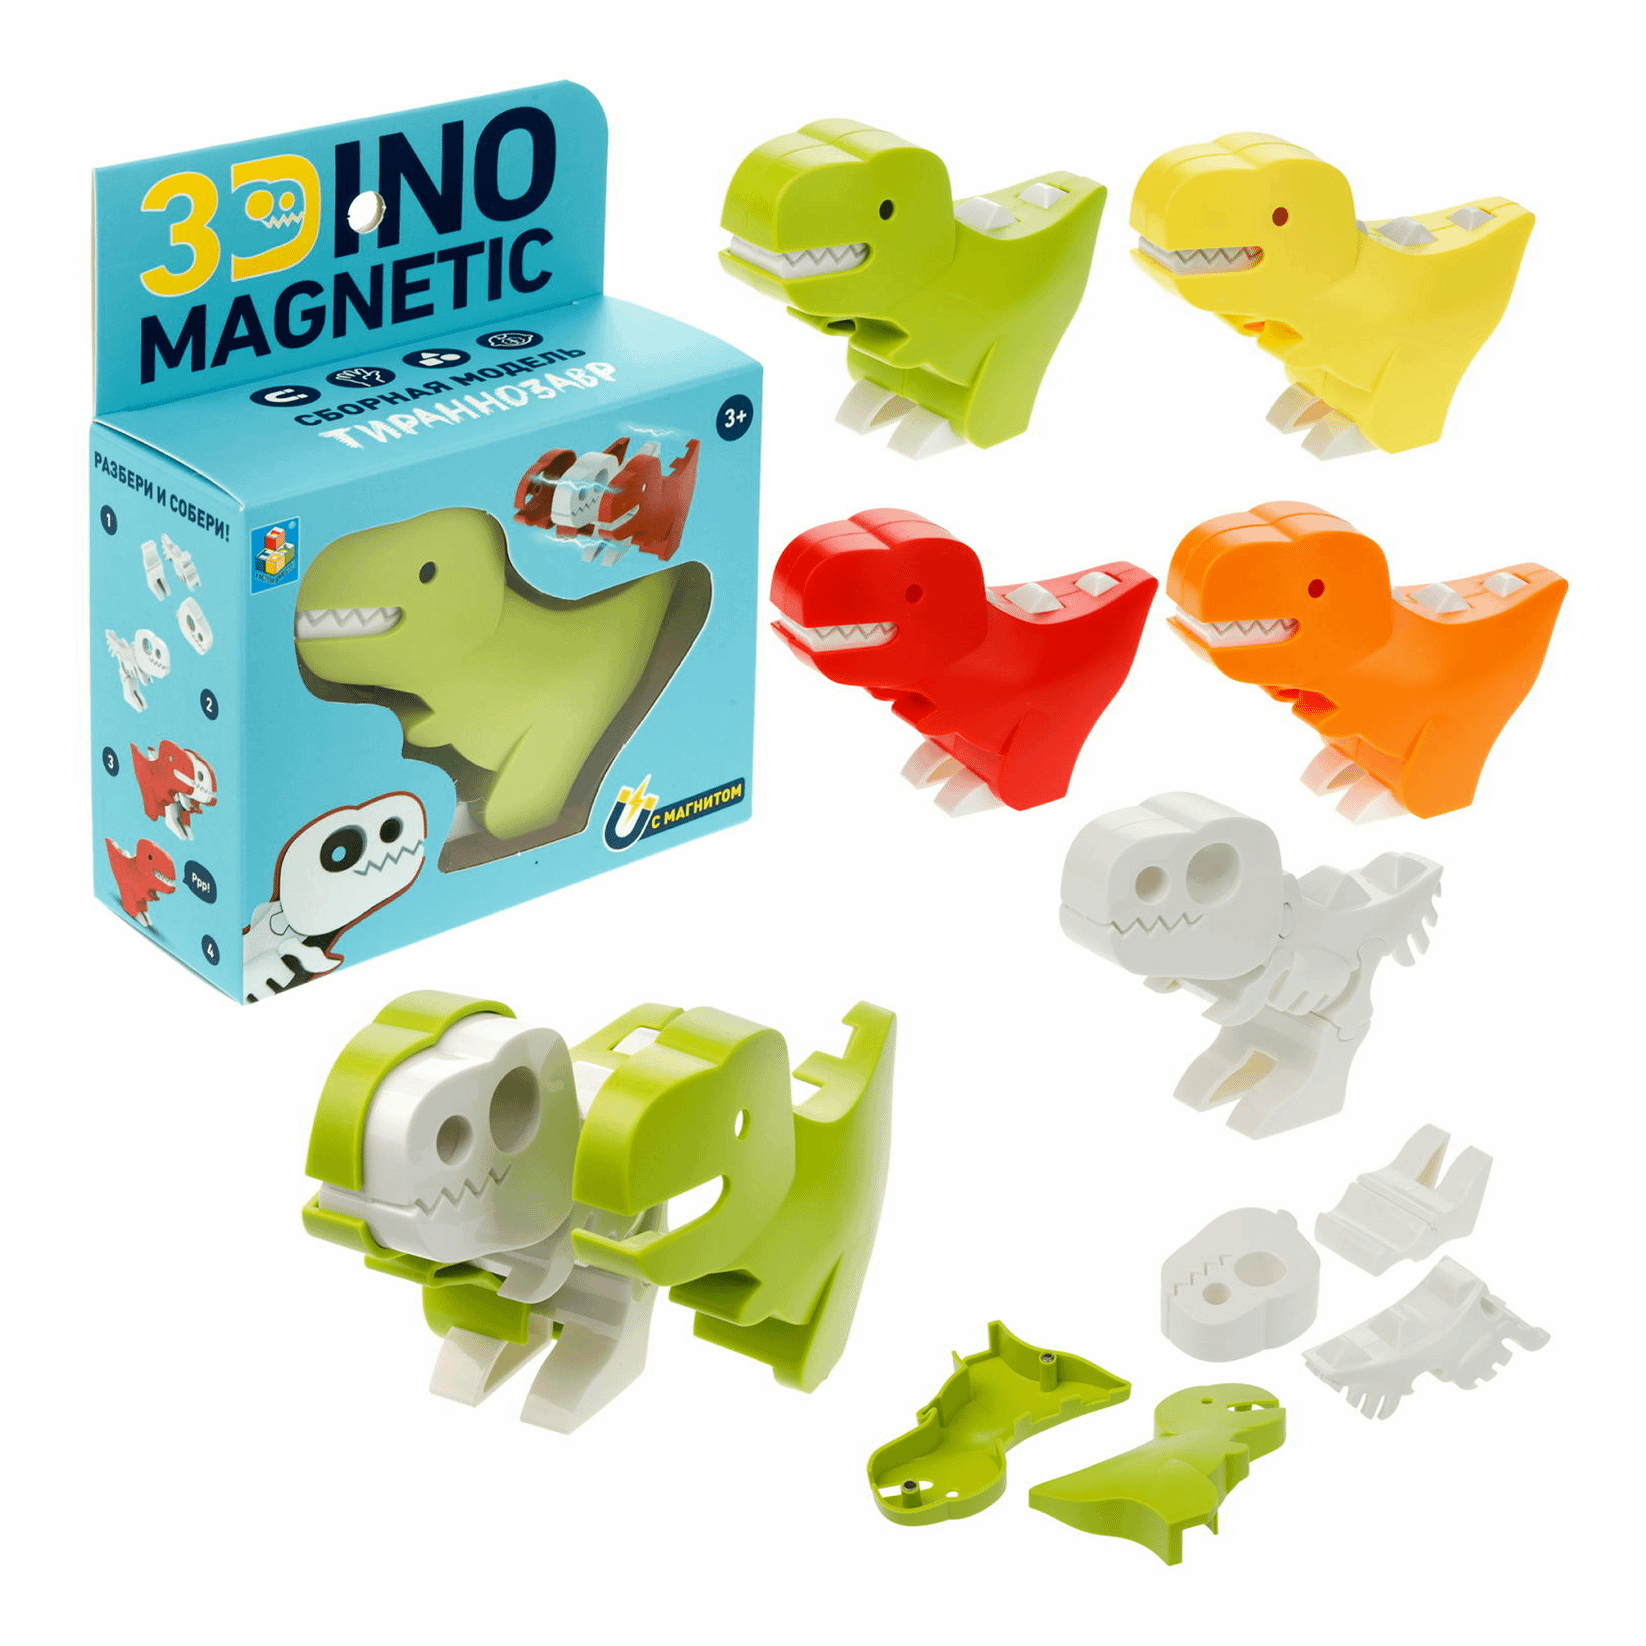 Конструктор 1Toy 3Dino Magnetic в ассортименте (модель и цвет по наличию)